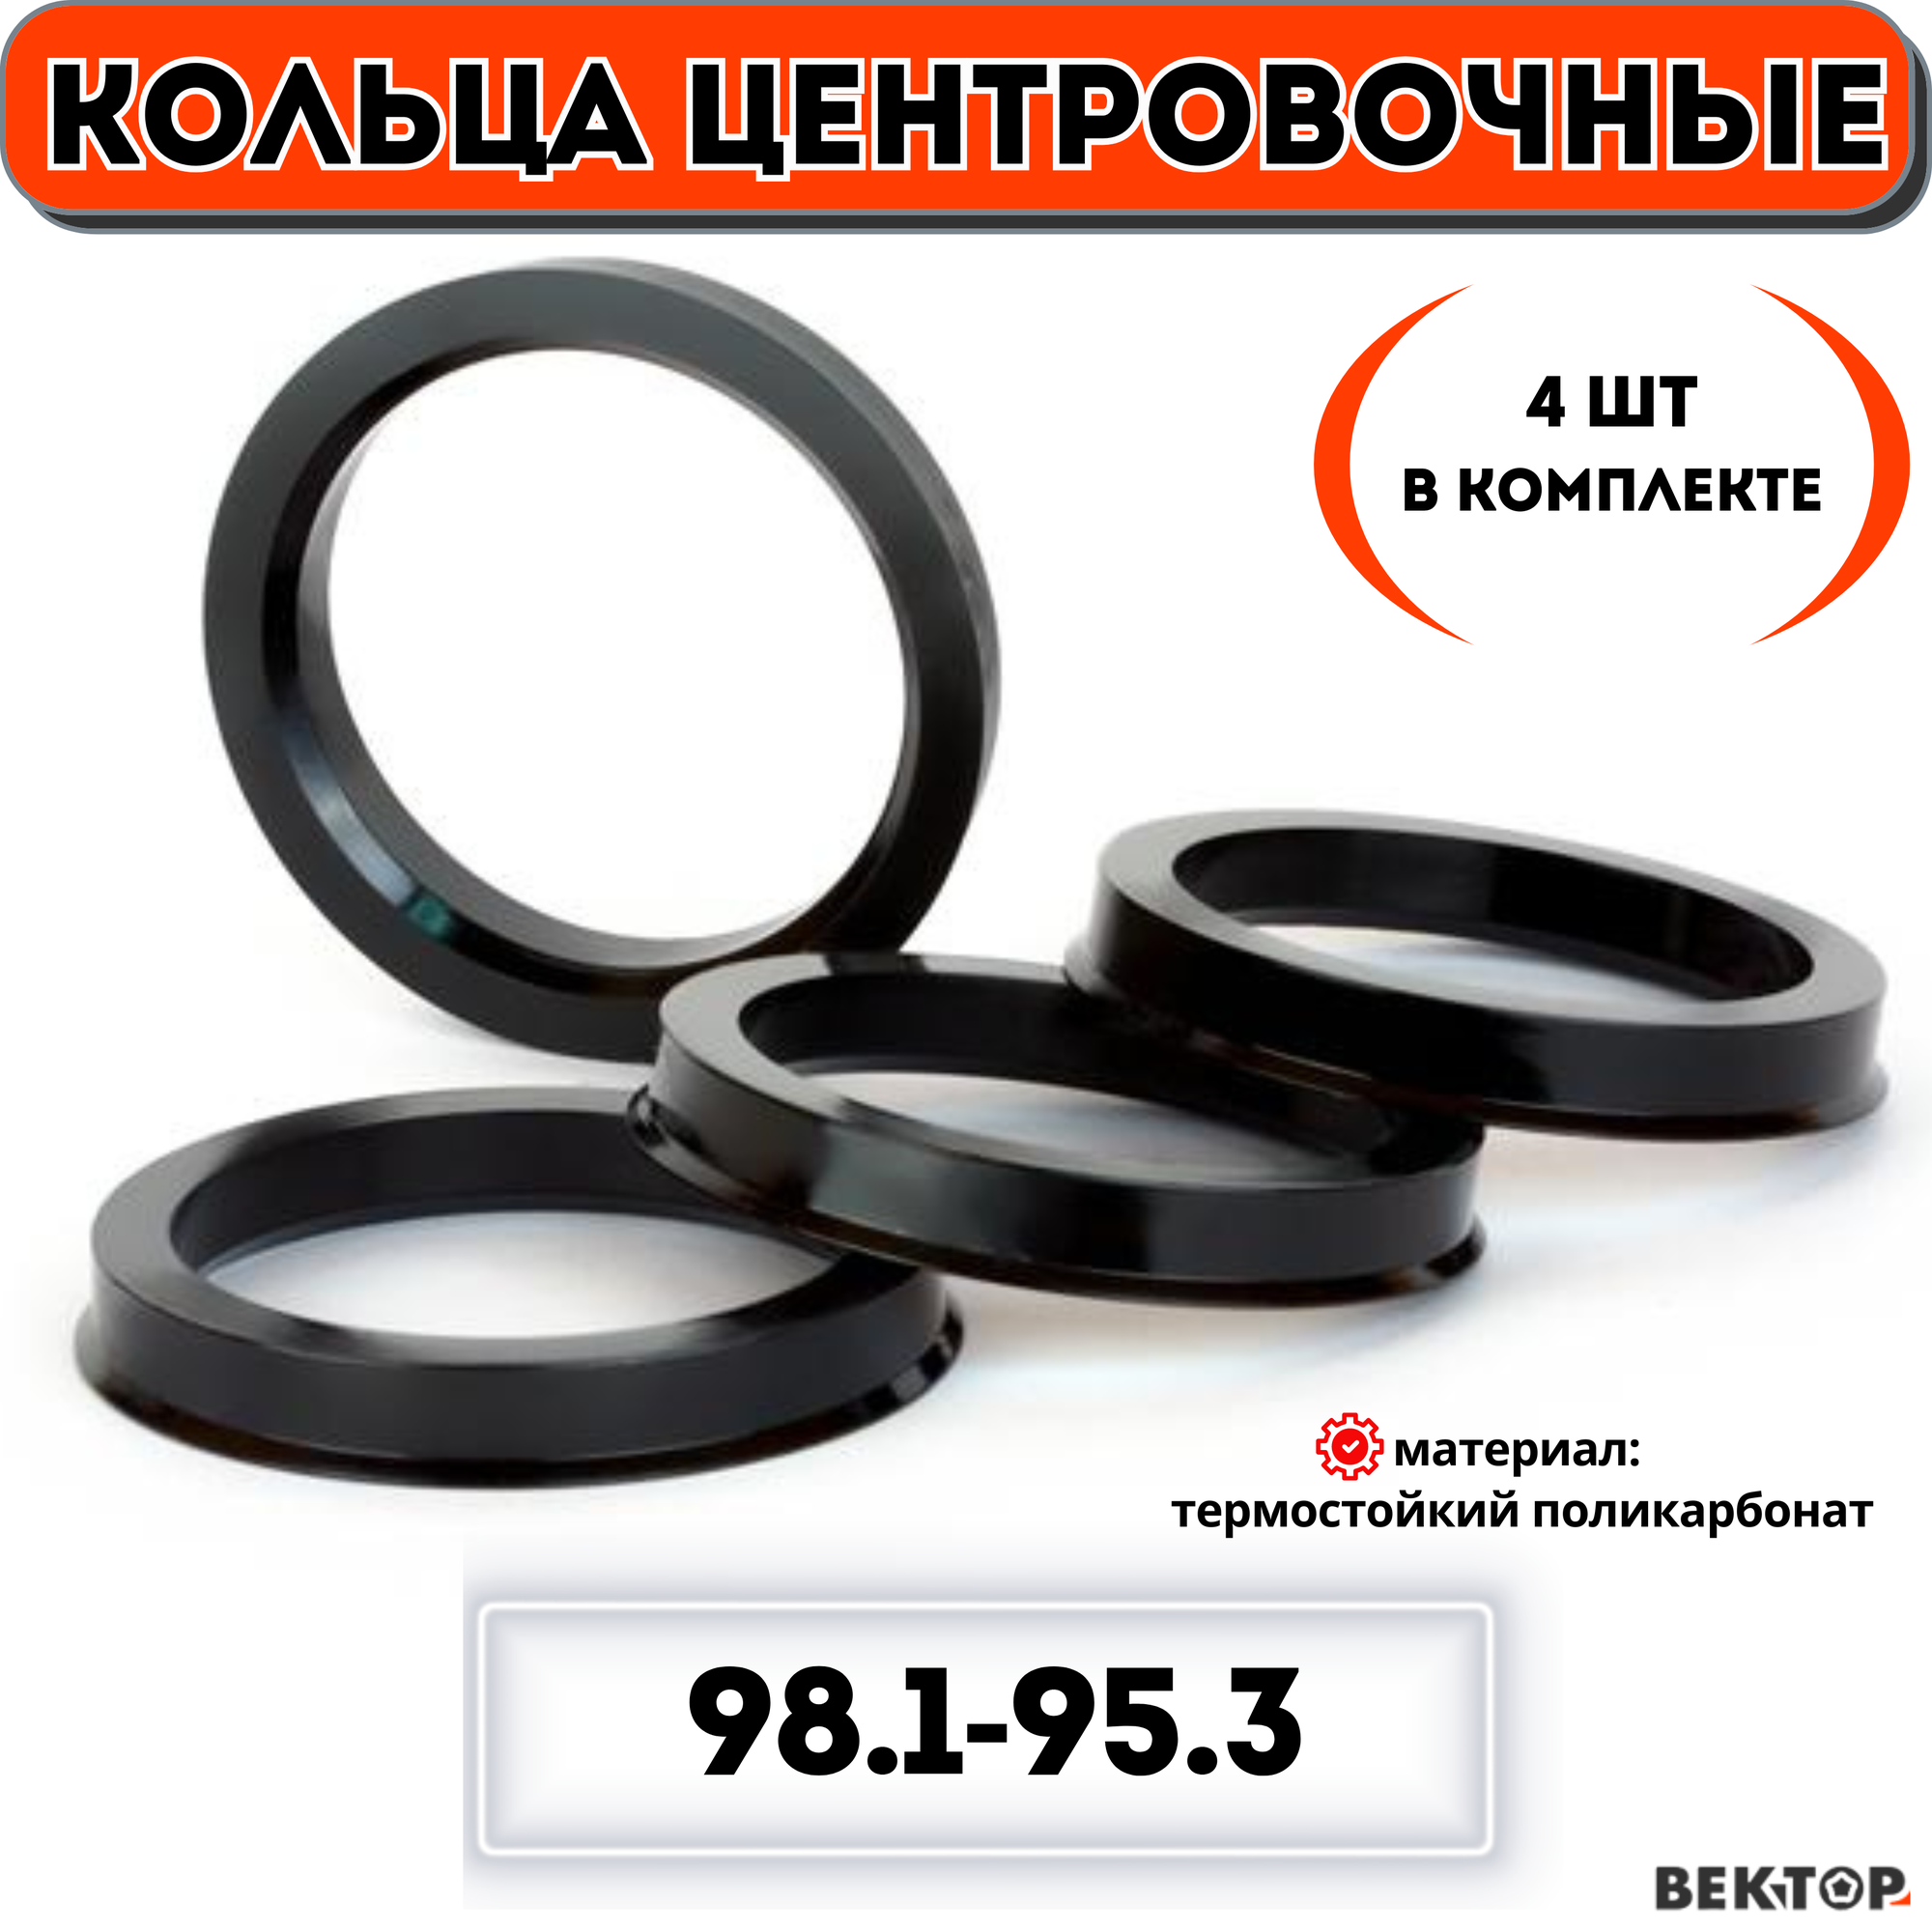 Центровочные кольца для автомобильных дисков 981-953 "вектор" (комплект 4 шт.)